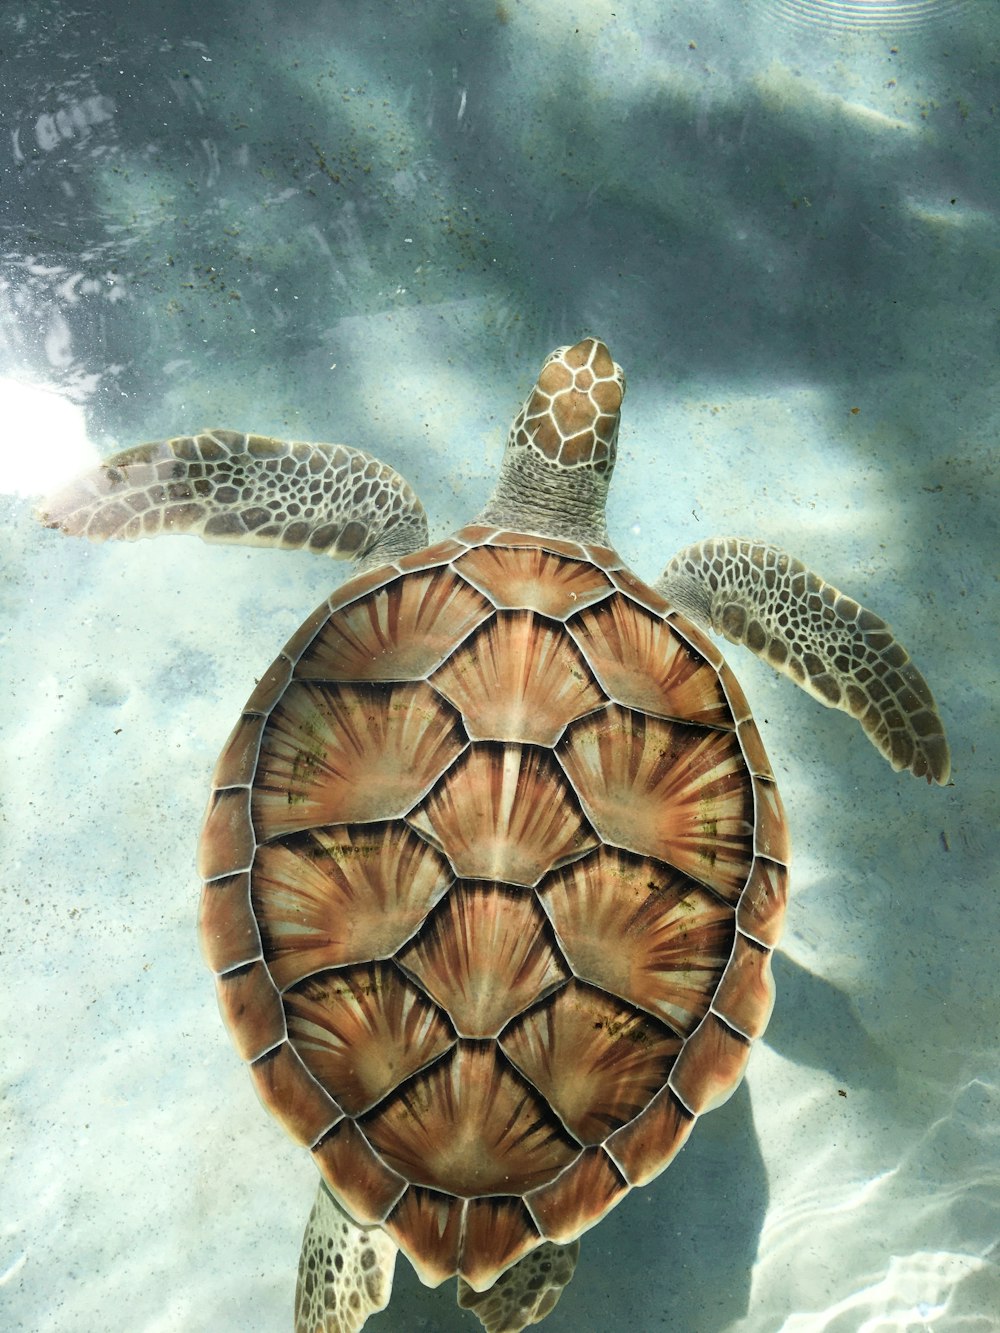 tartaruga marrom nadando na água